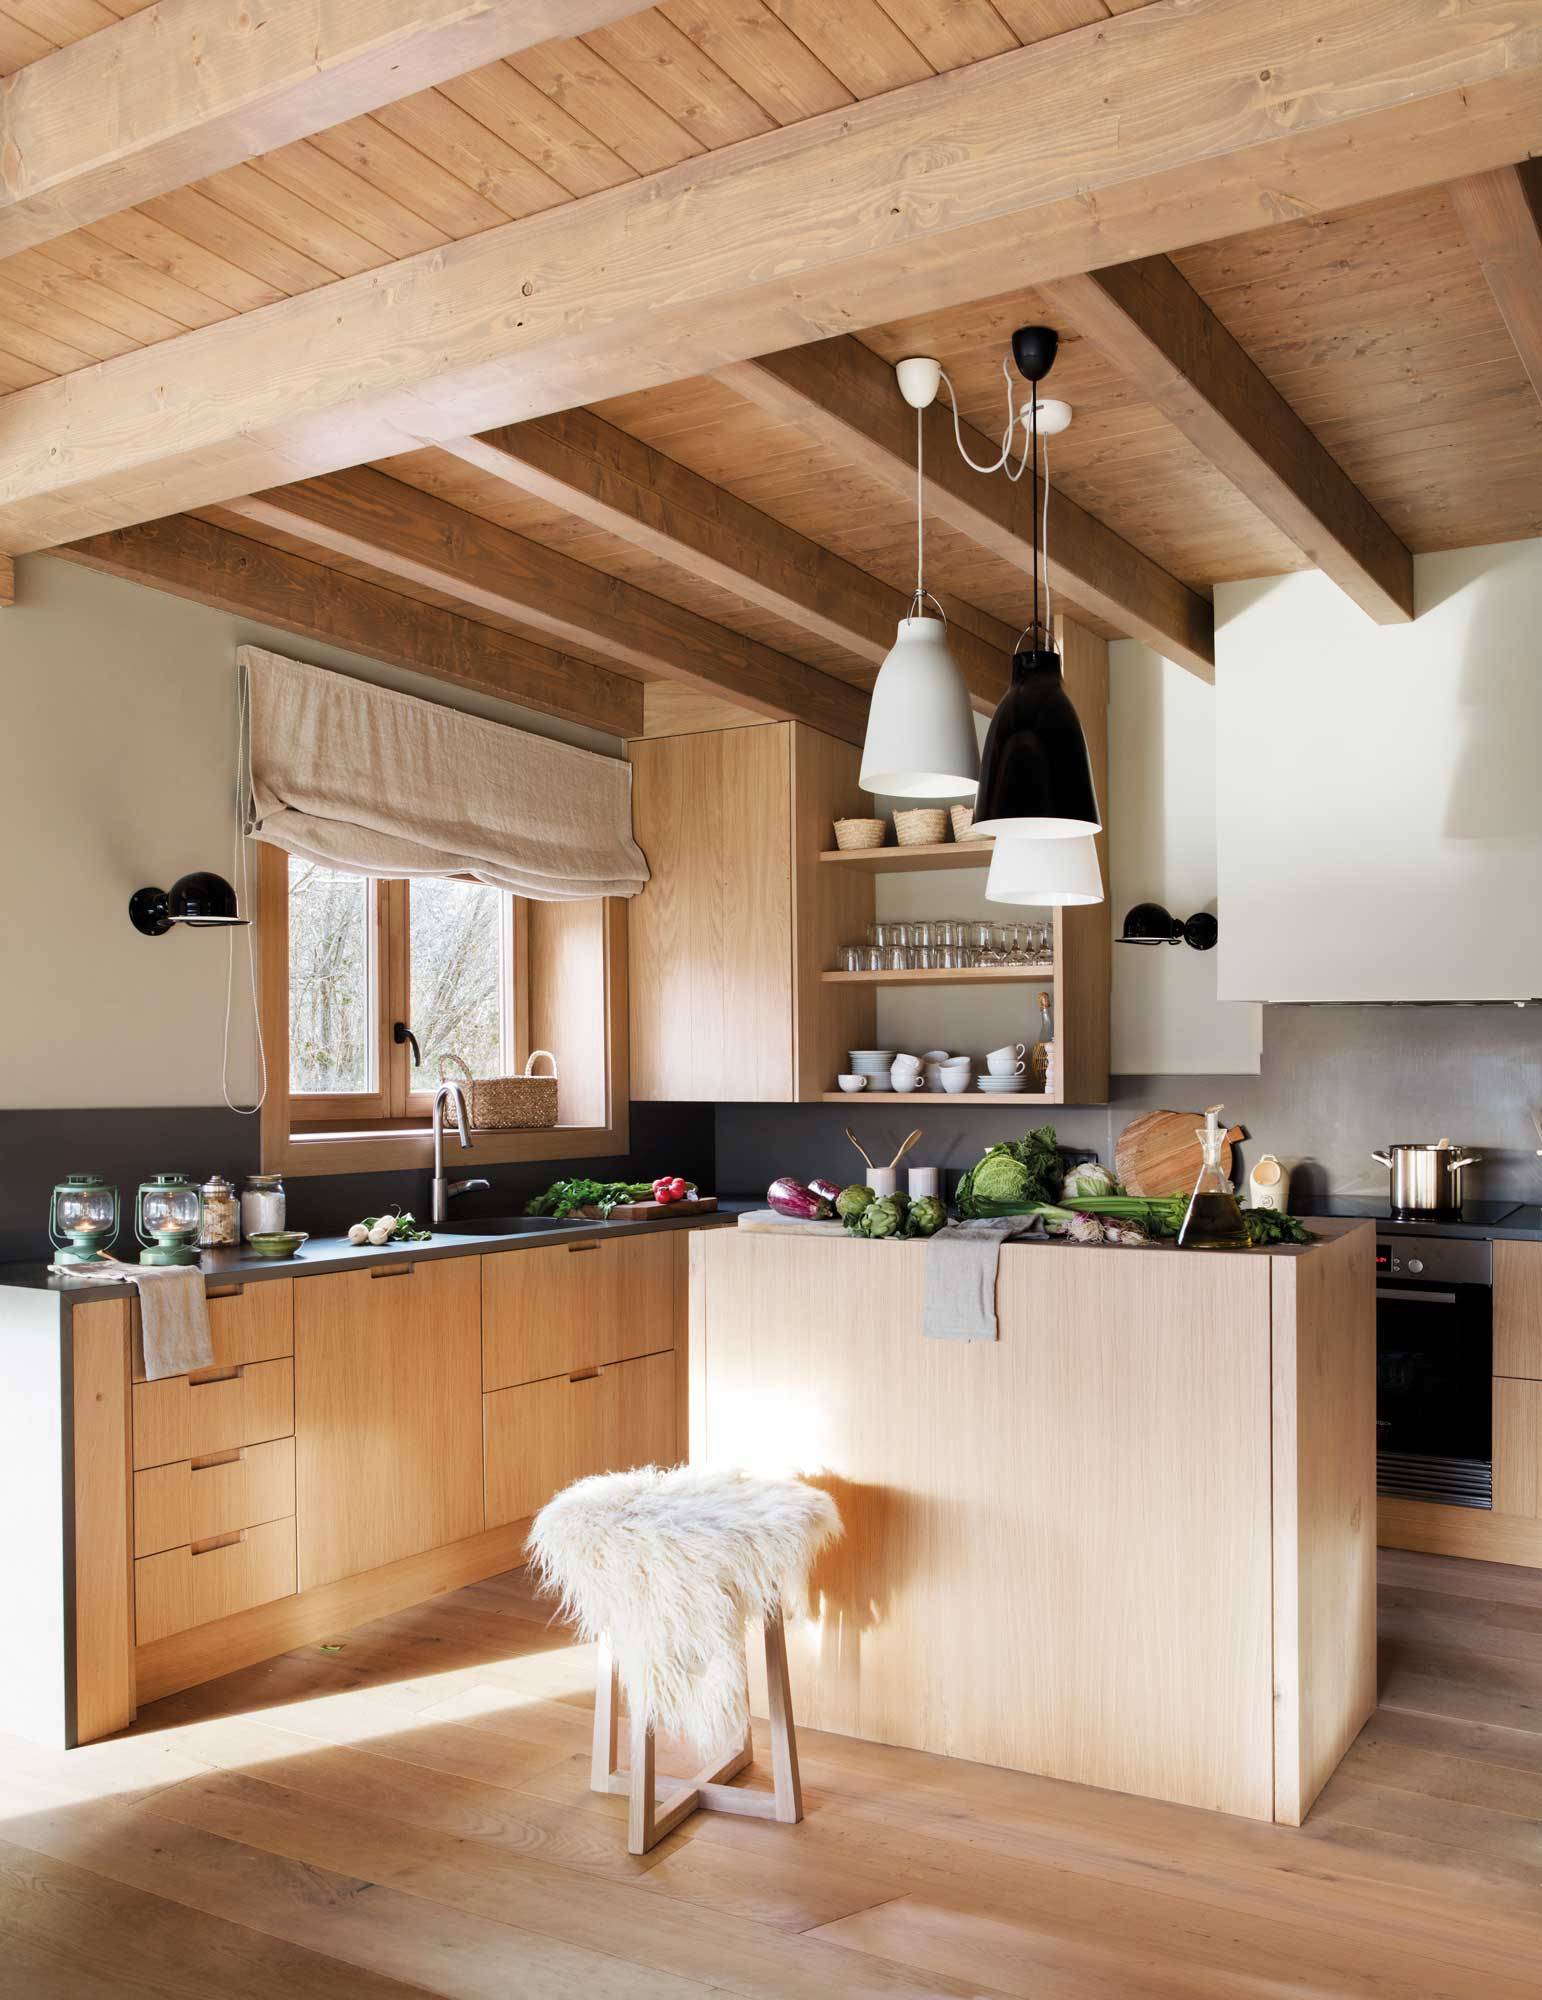 Cocina de estilo rústico moderno abierta con muebles en madera.